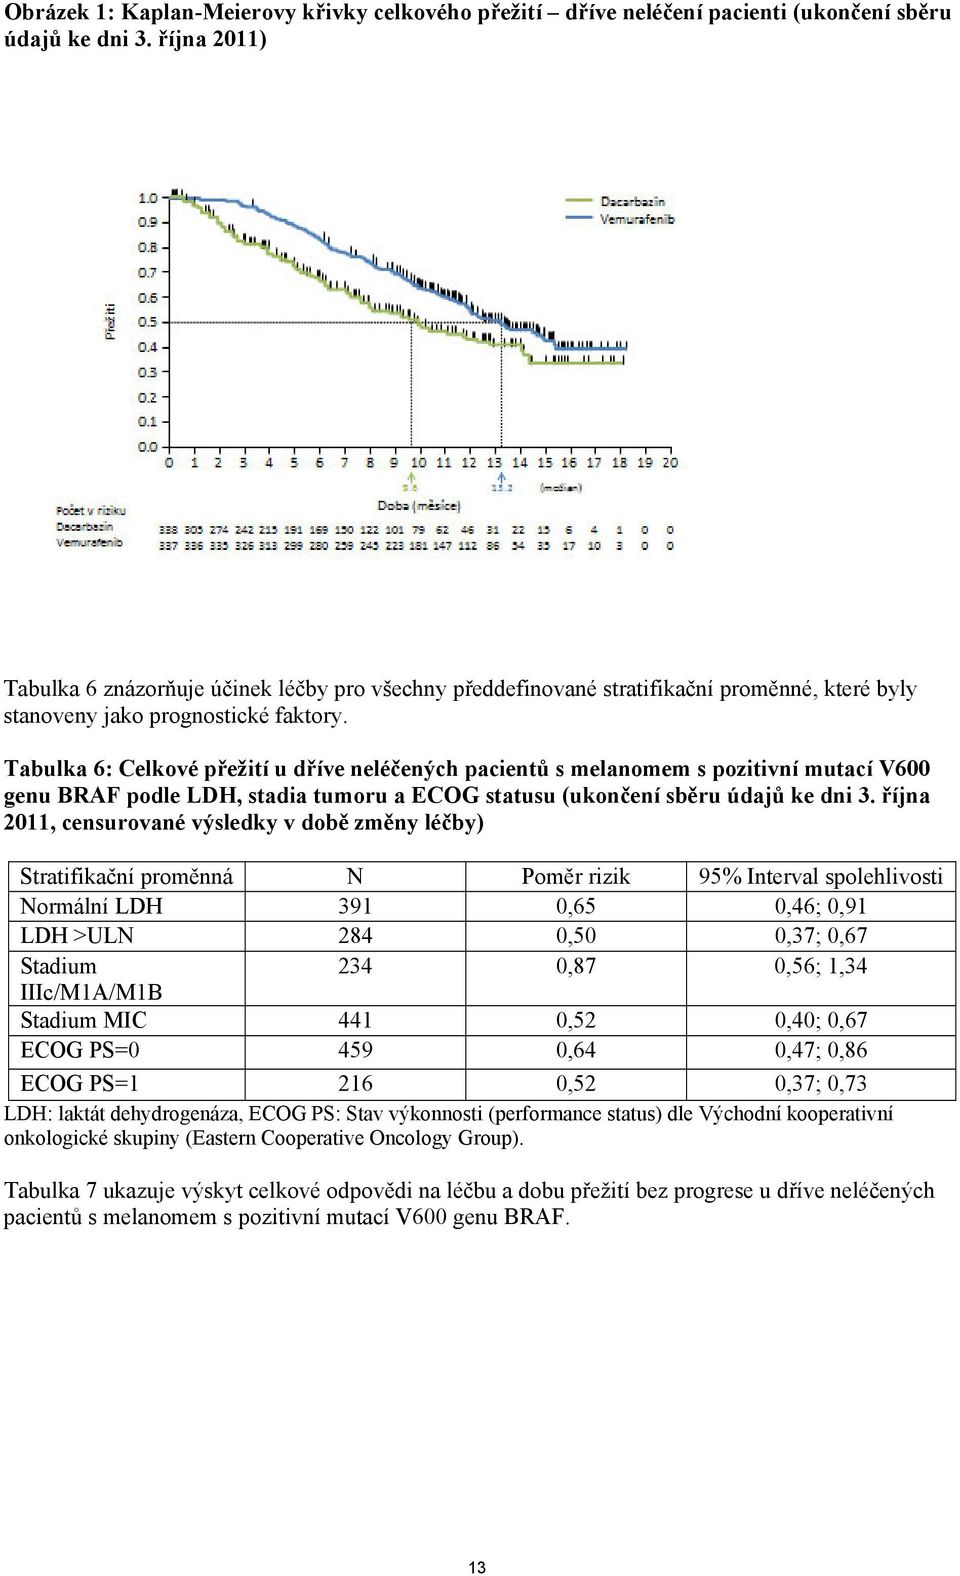 Tabulka 6: Celkové přežití u dříve neléčených pacientů s melanomem s pozitivní mutací V600 genu BRAF podle LDH, stadia tumoru a ECOG statusu (ukončení sběru údajů ke dni 3.